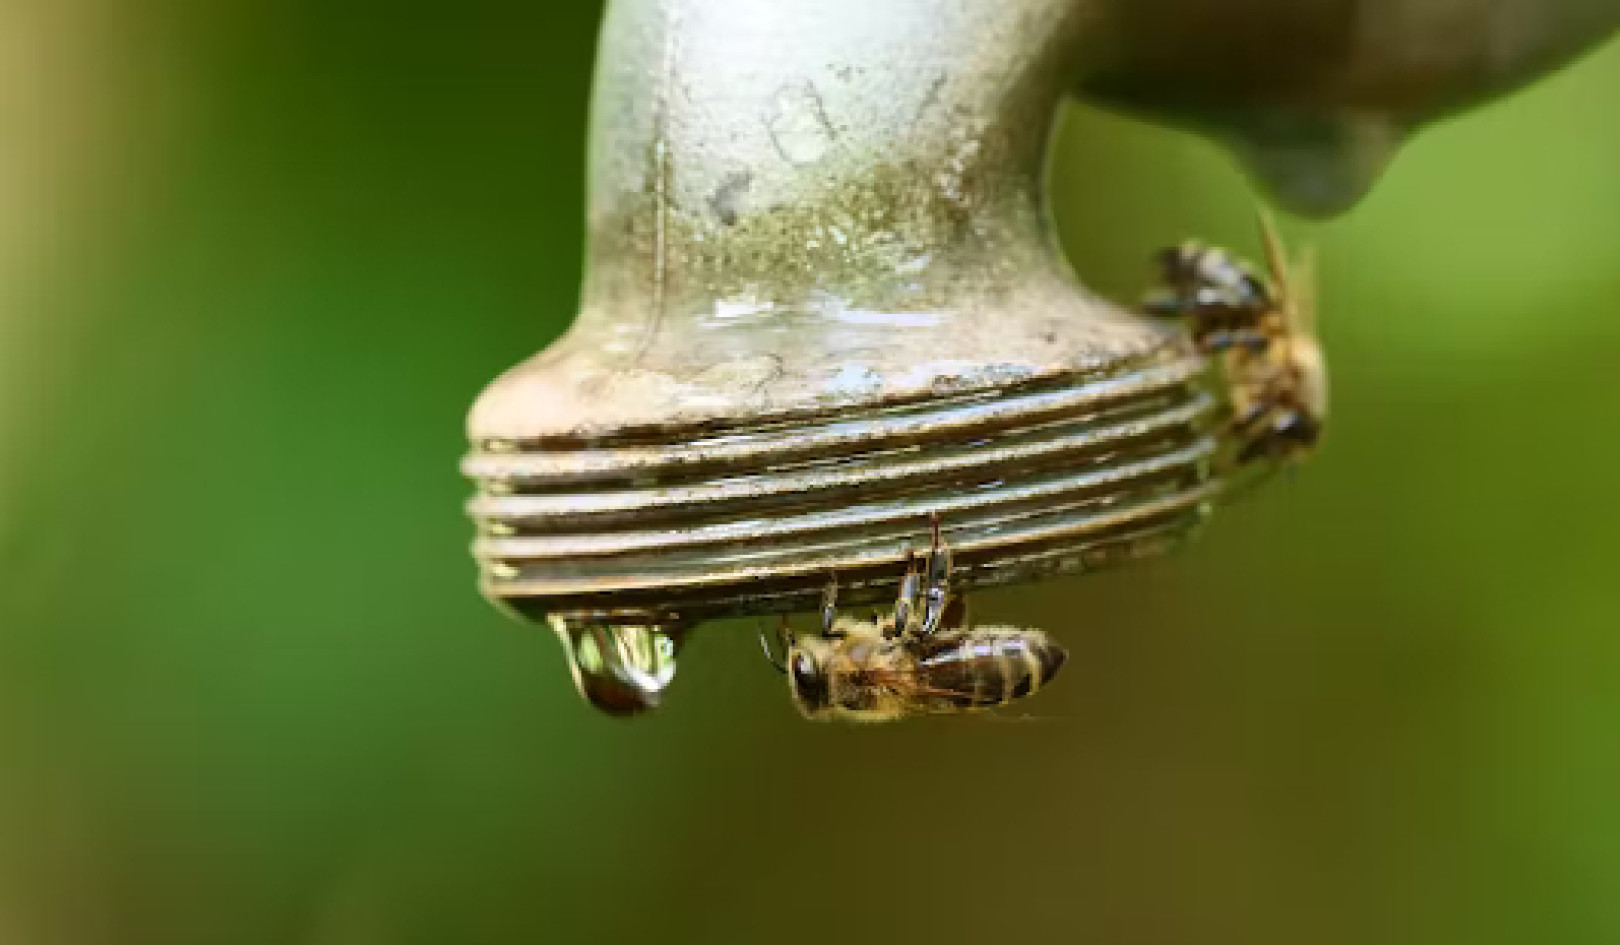 Le api devono affrontare molte sfide e il cambiamento climatico sta aumentando la pressione